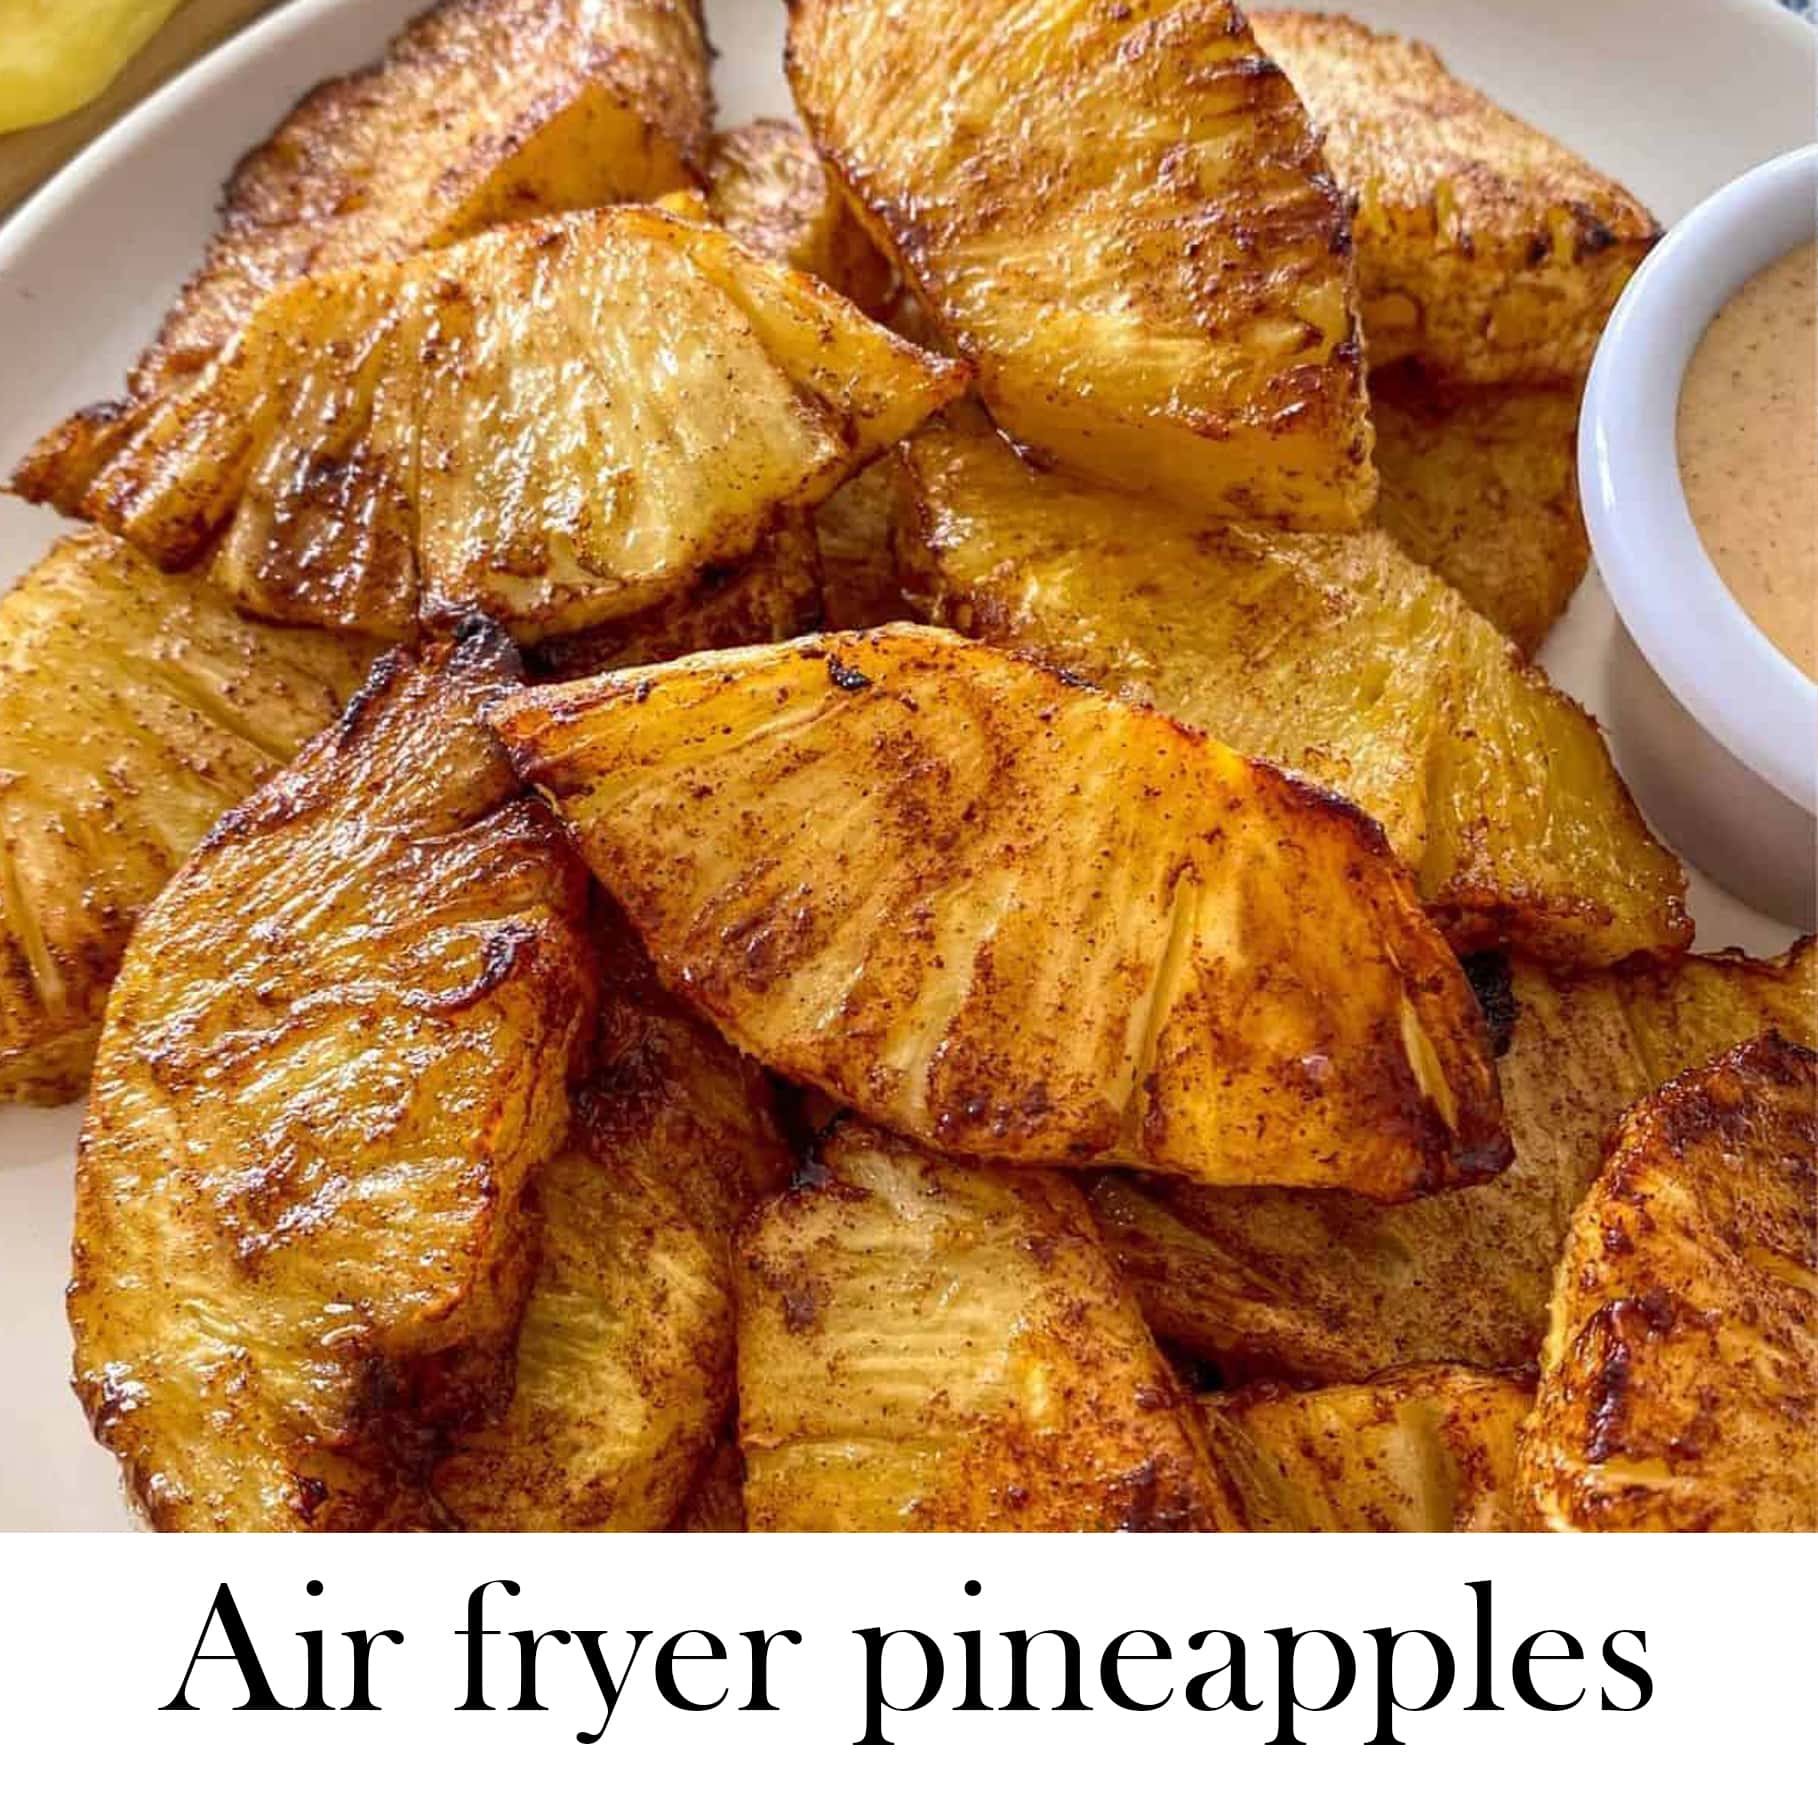 Air fryer pineapples